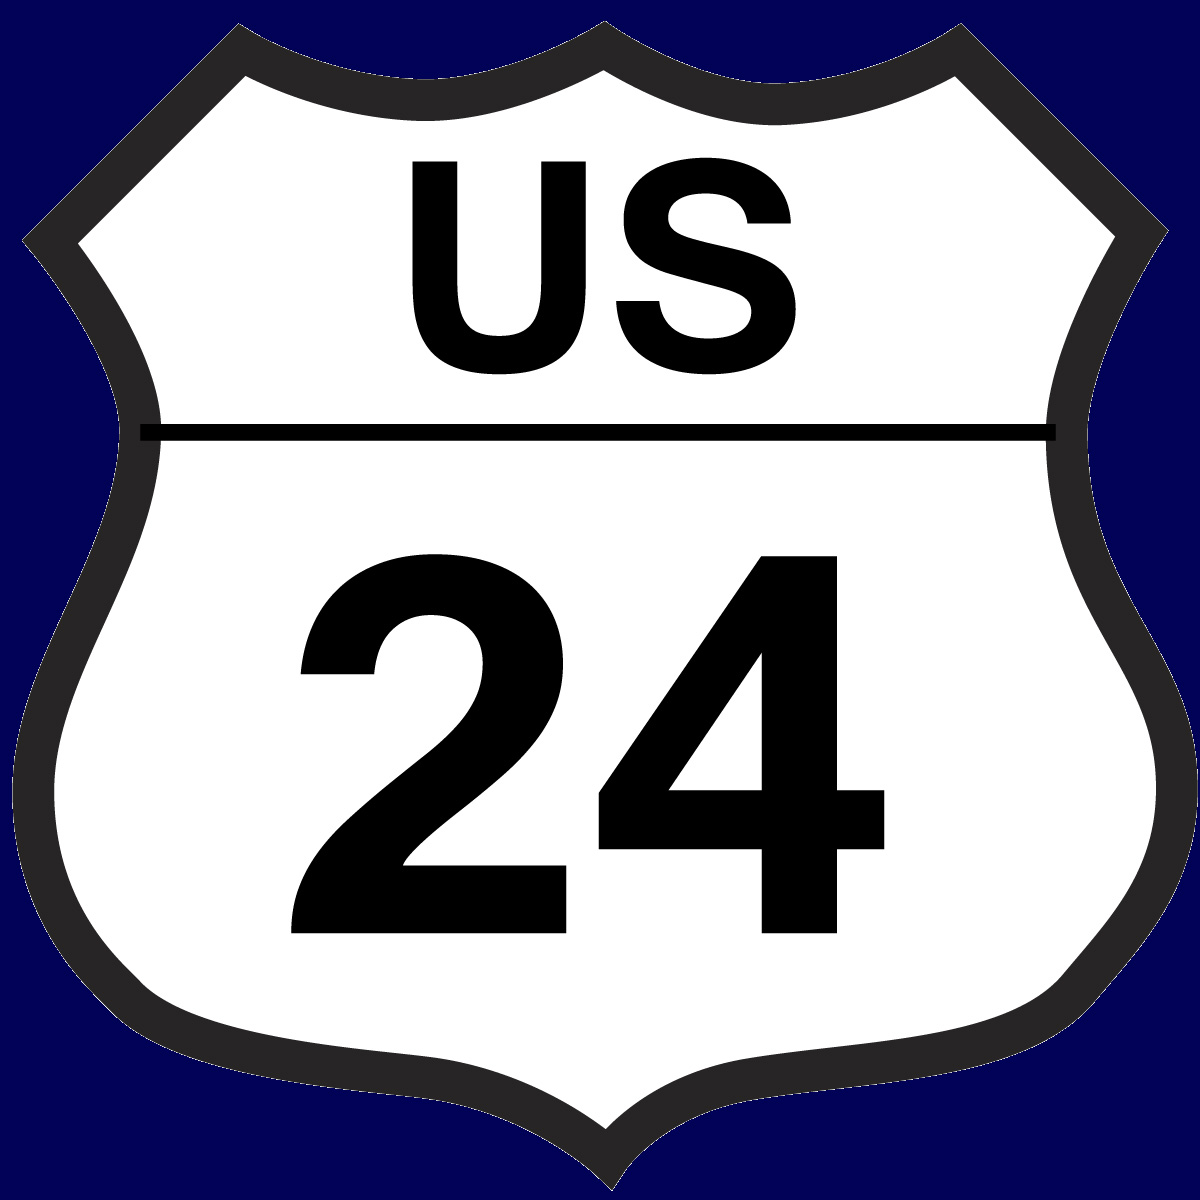 US 24